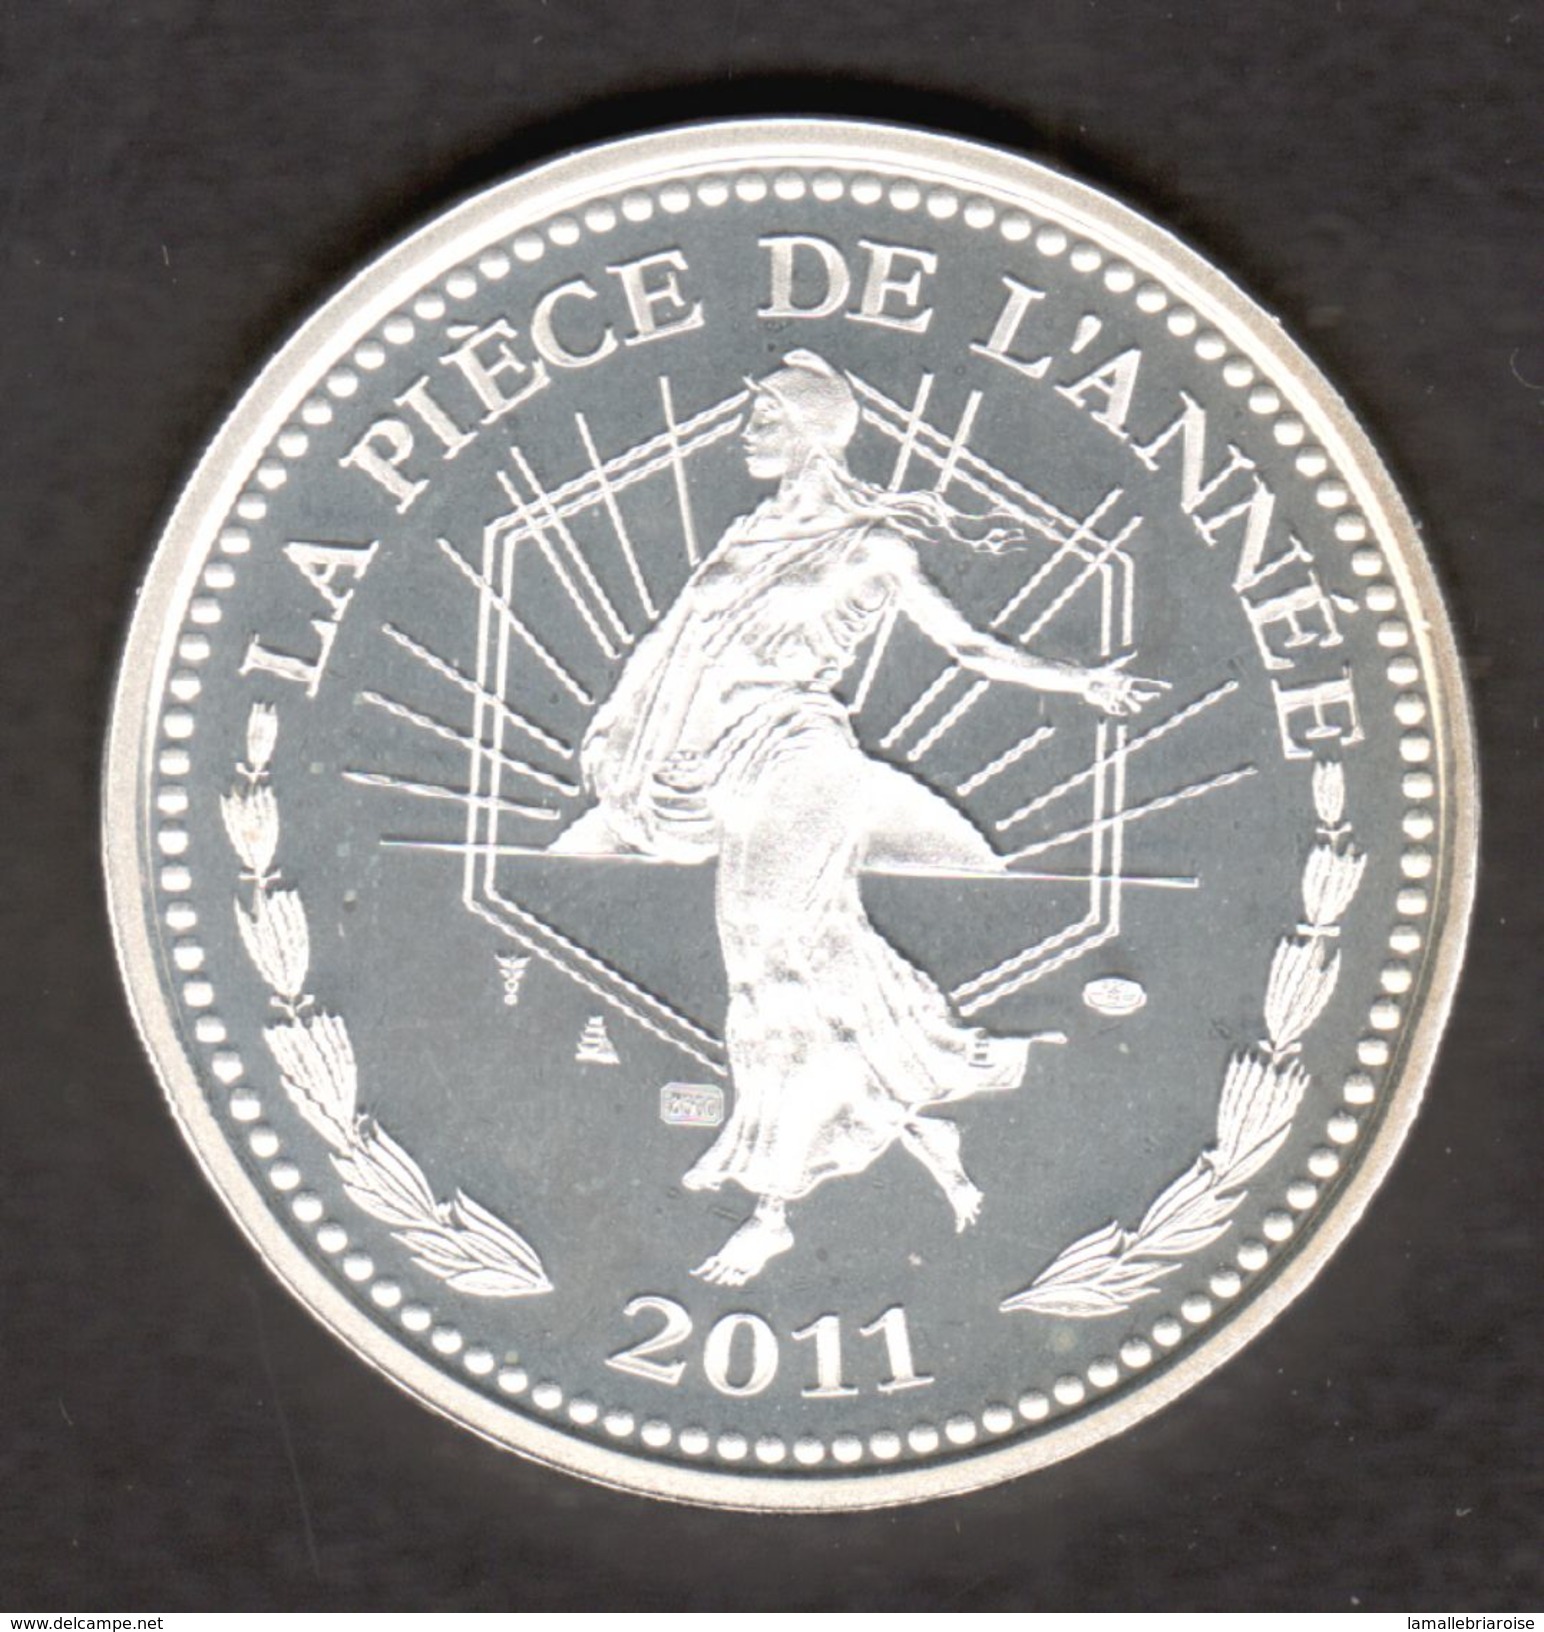 La Piece De L'annee 2011, IN MEMORIAM, Notre Dame De Reims, Marie Curie, TGV, Argent 900/00 - Non Classés